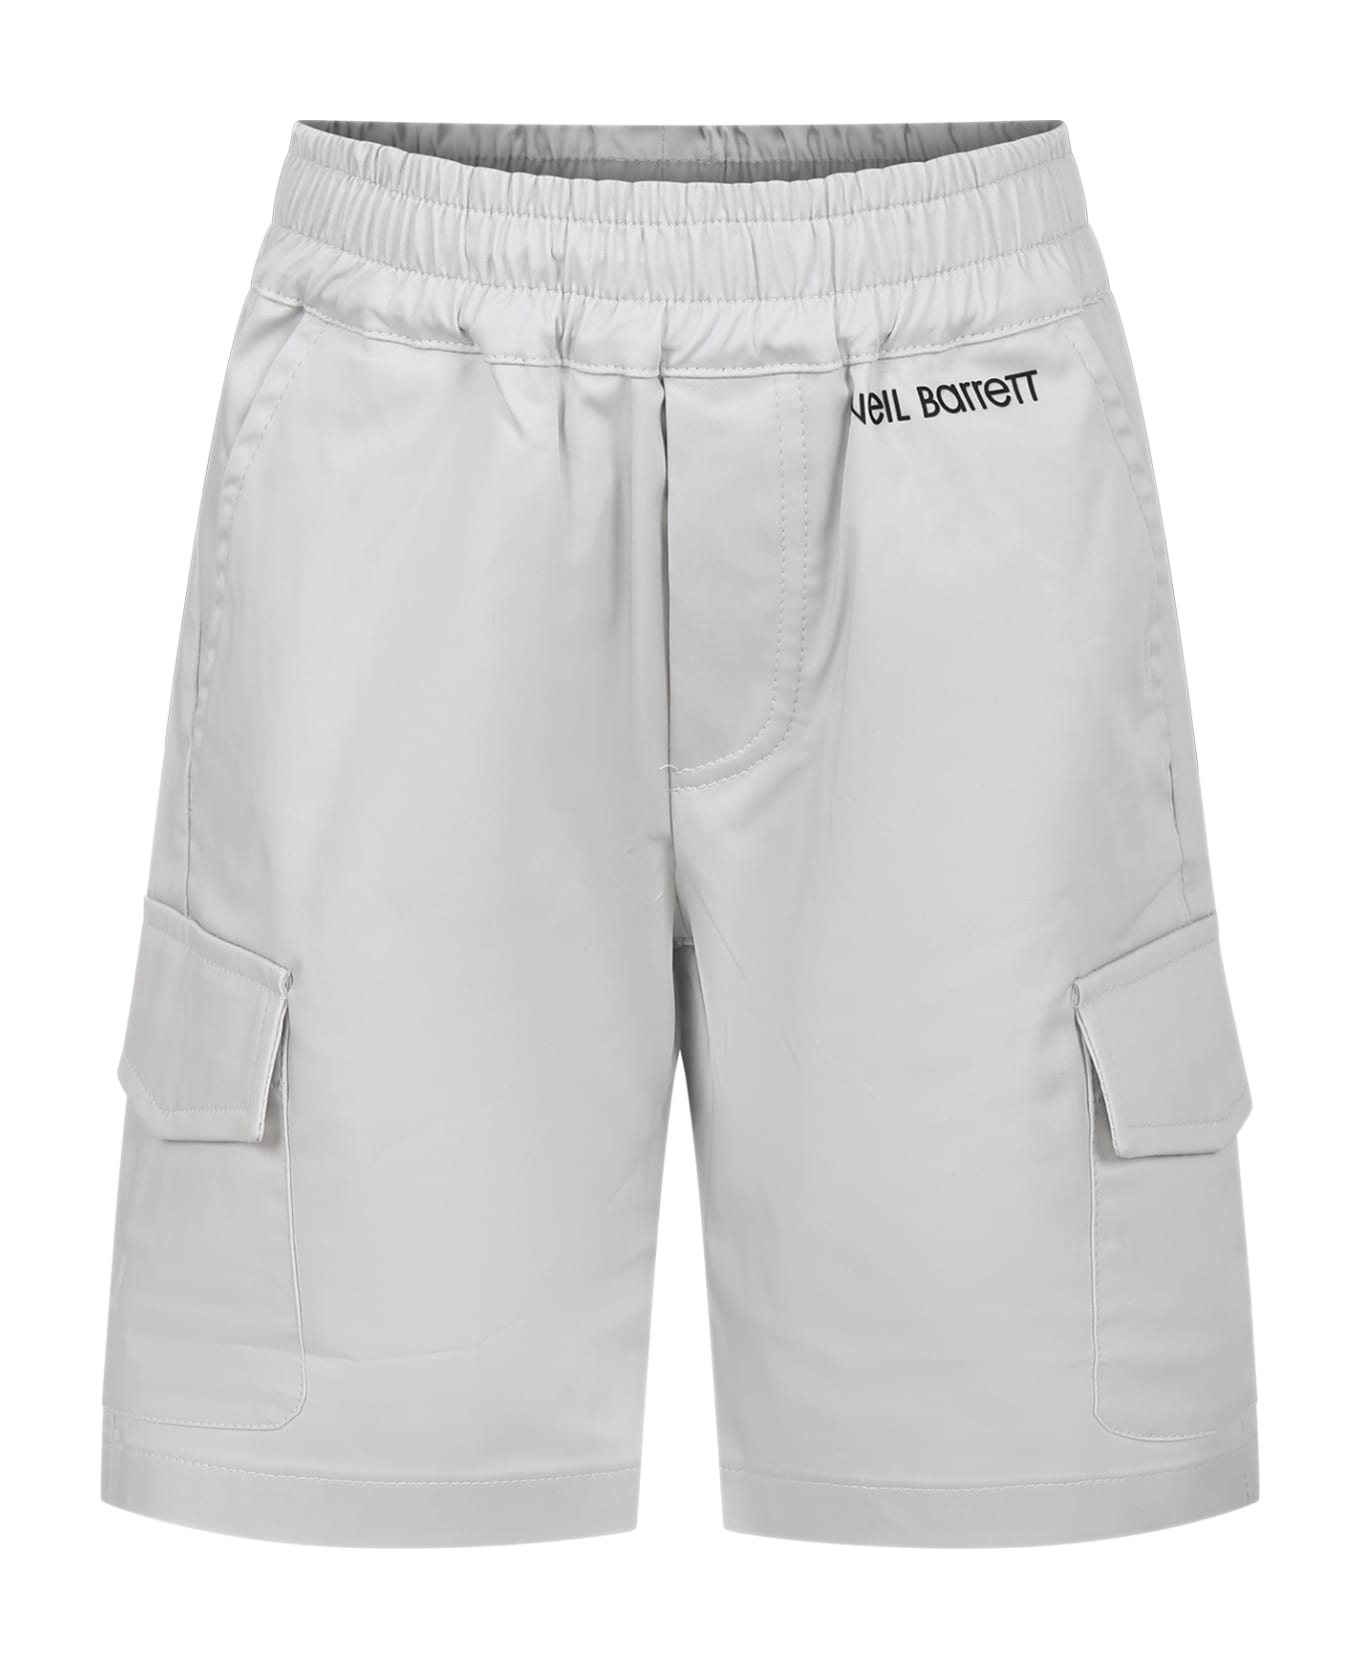 Neil Barrett Grey Shorts For Boy - Grey ボトムス